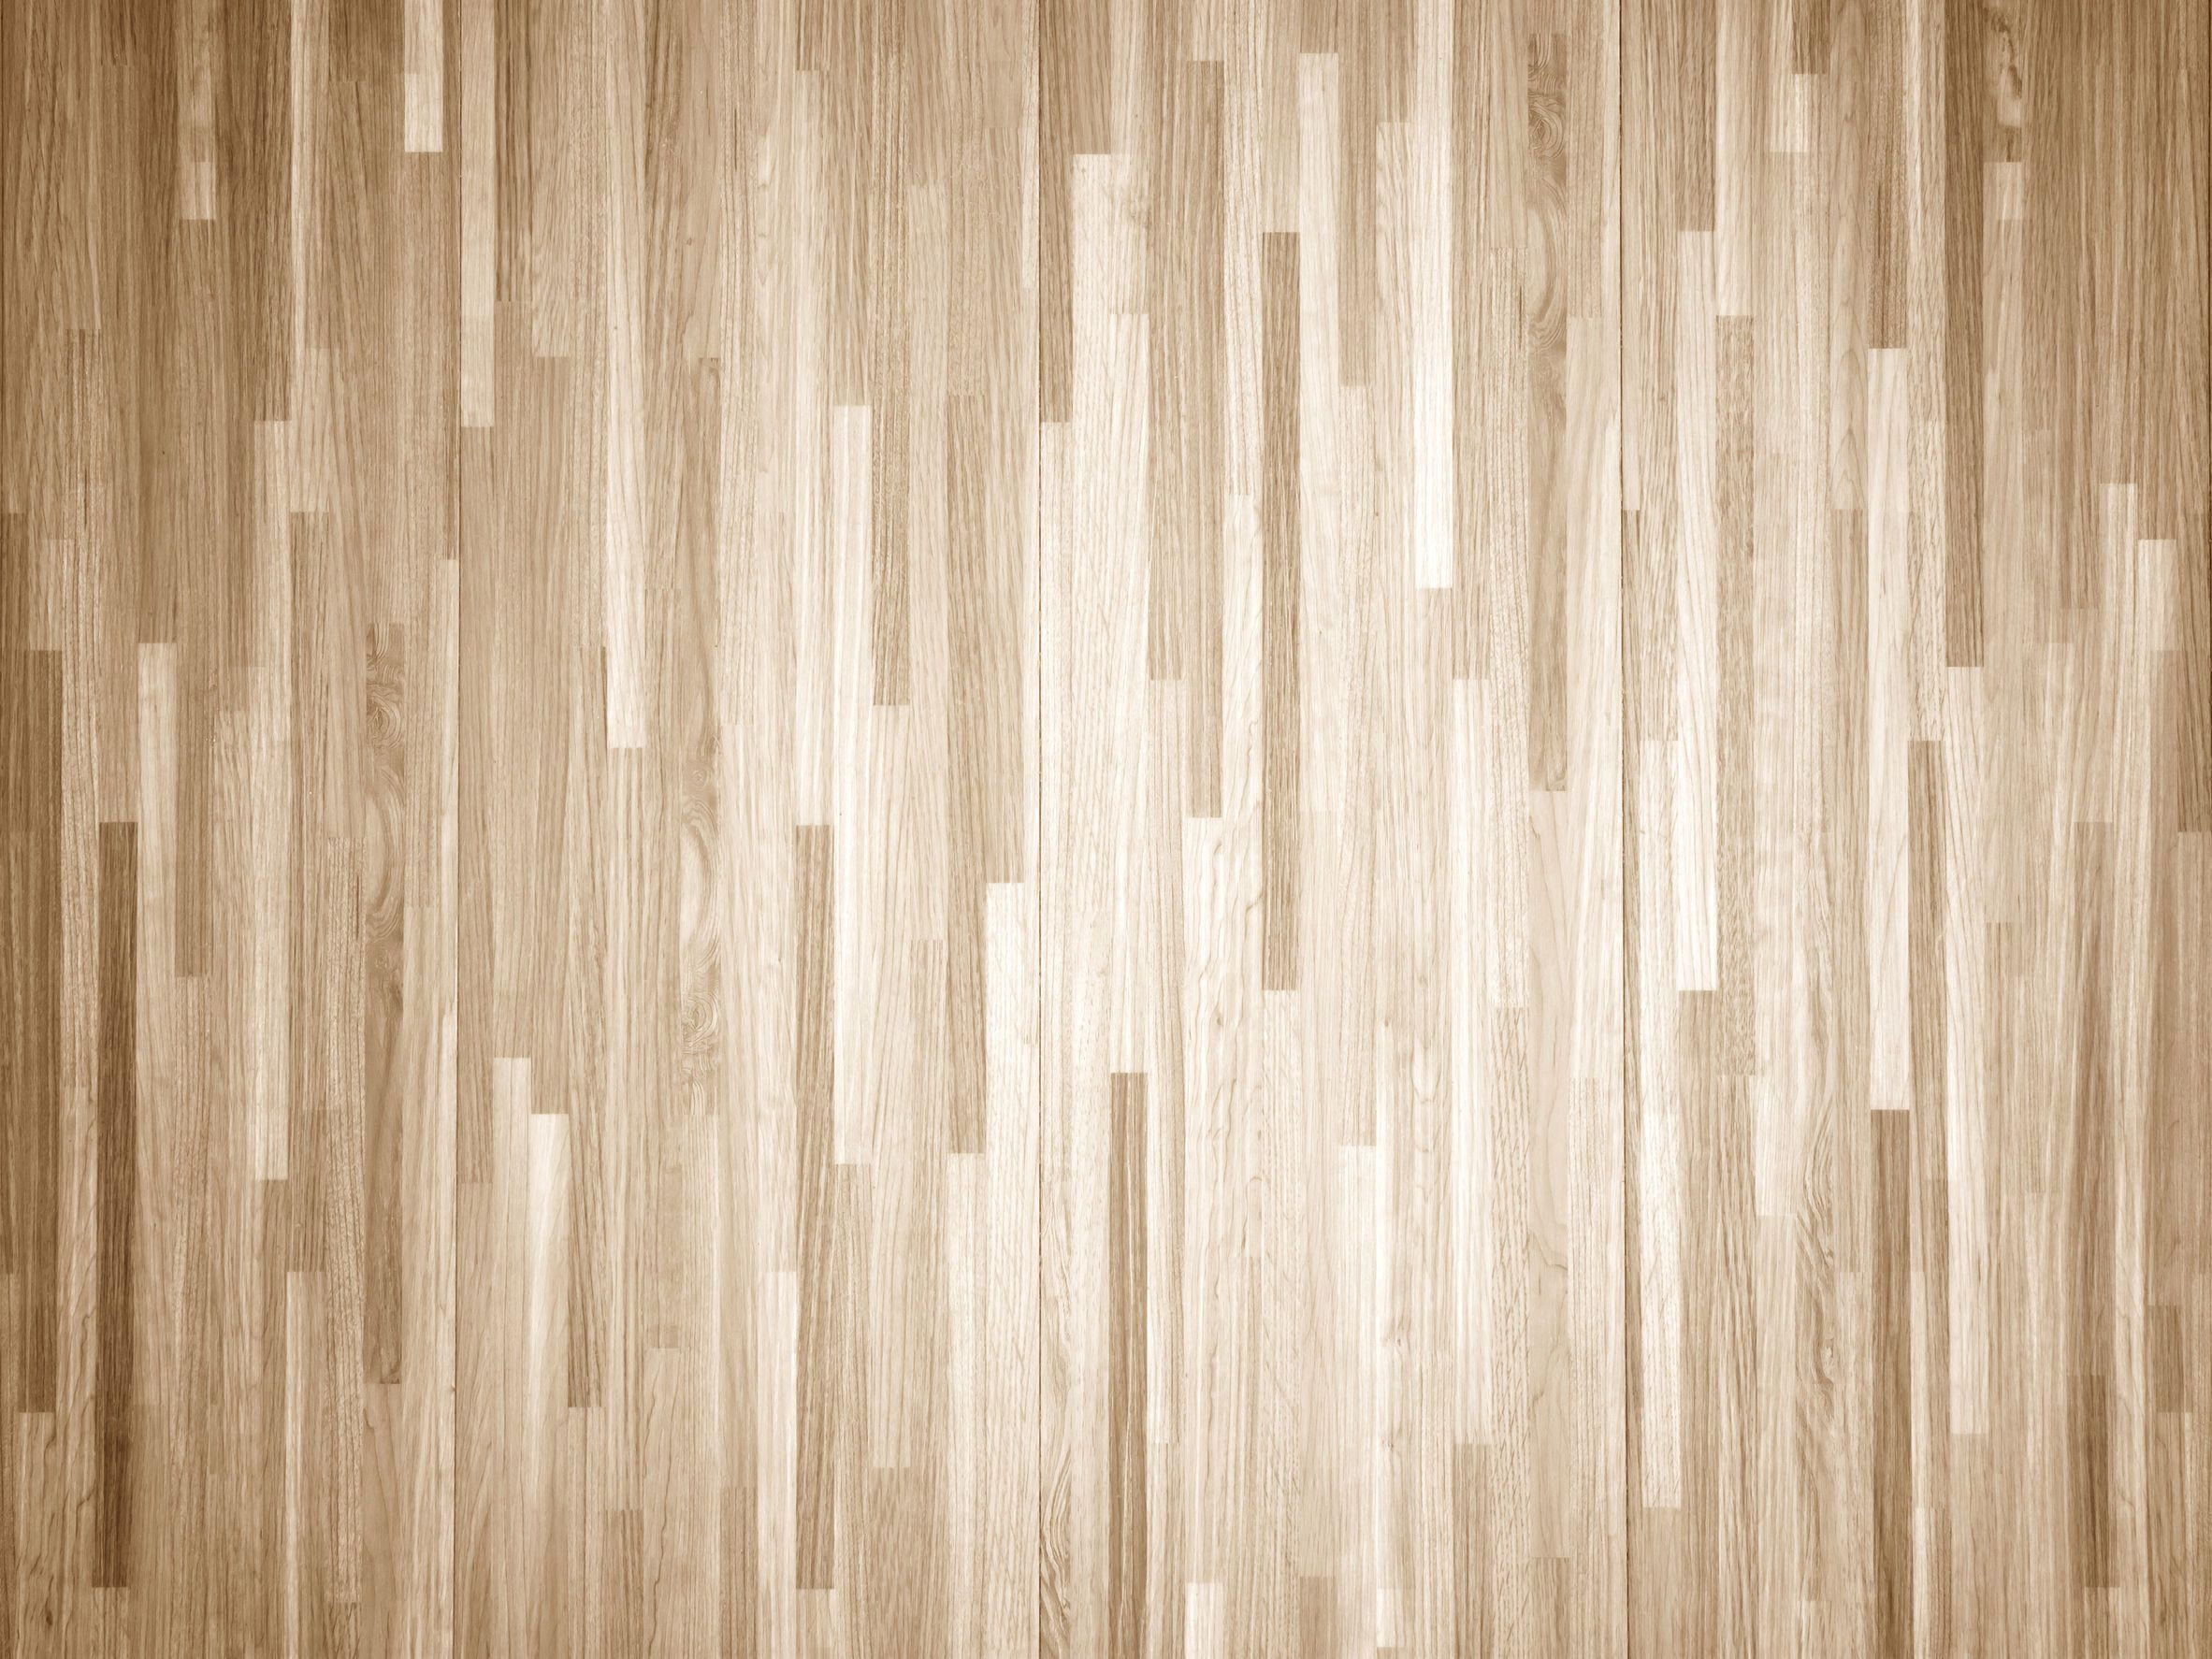 20 Stylish Refinishing Bruce Prefinished Hardwood Flooring 2024 free download refinishing bruce prefinished hardwood flooring of how to chemically strip wood floors woodfloordoctor com inside you